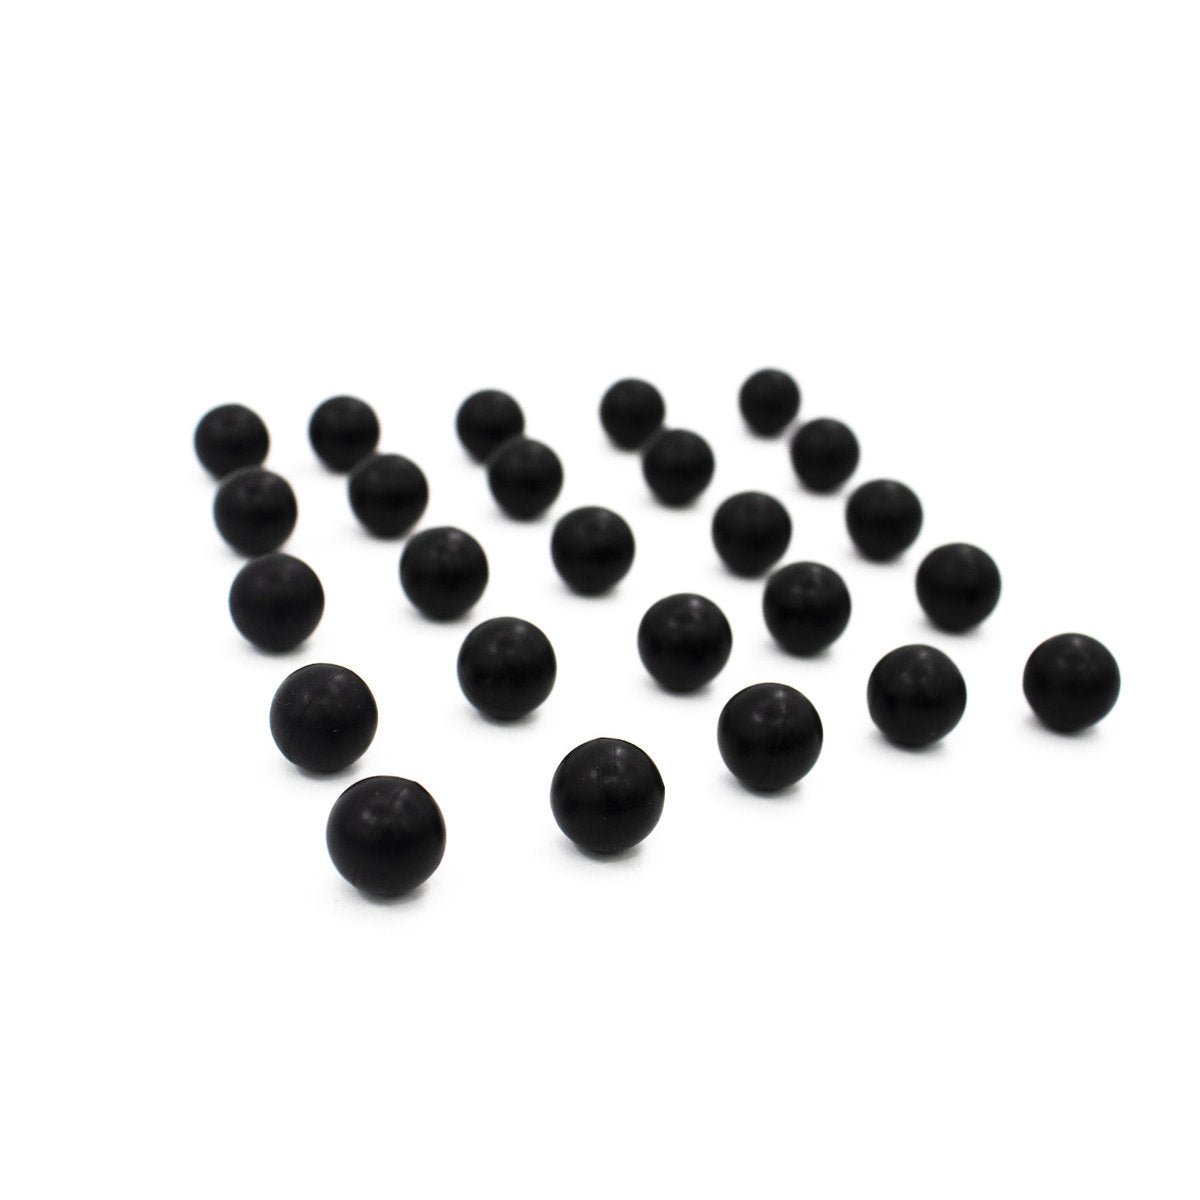 Shop Valken Defender Rubber Balls | .50 Caliber Hard  - 25Ct